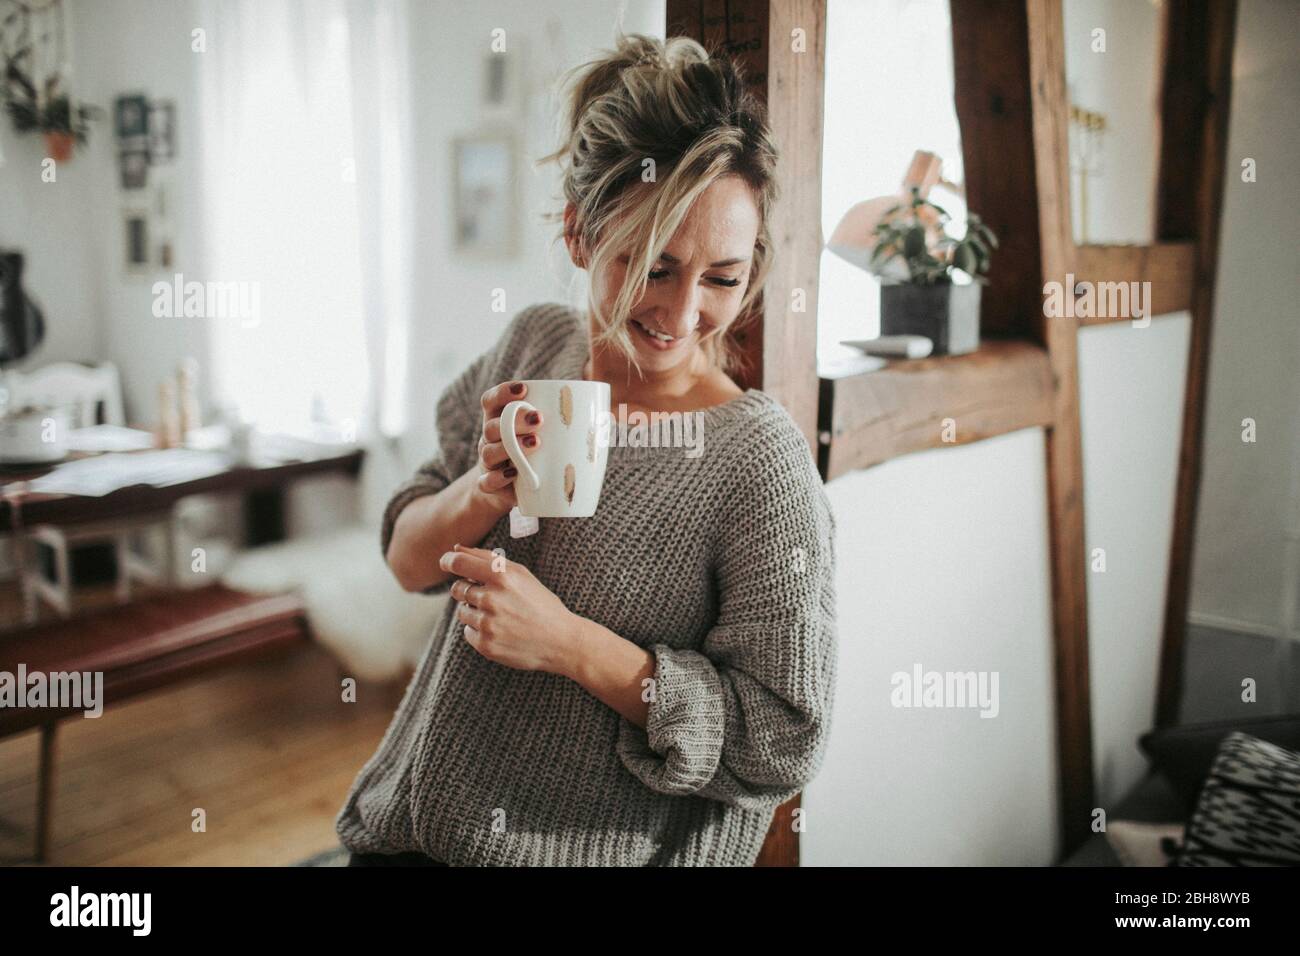 junge Frau in ihrer Wohnung, hält Tasse in der Hand, lachen, Halbporträt Stock Photo